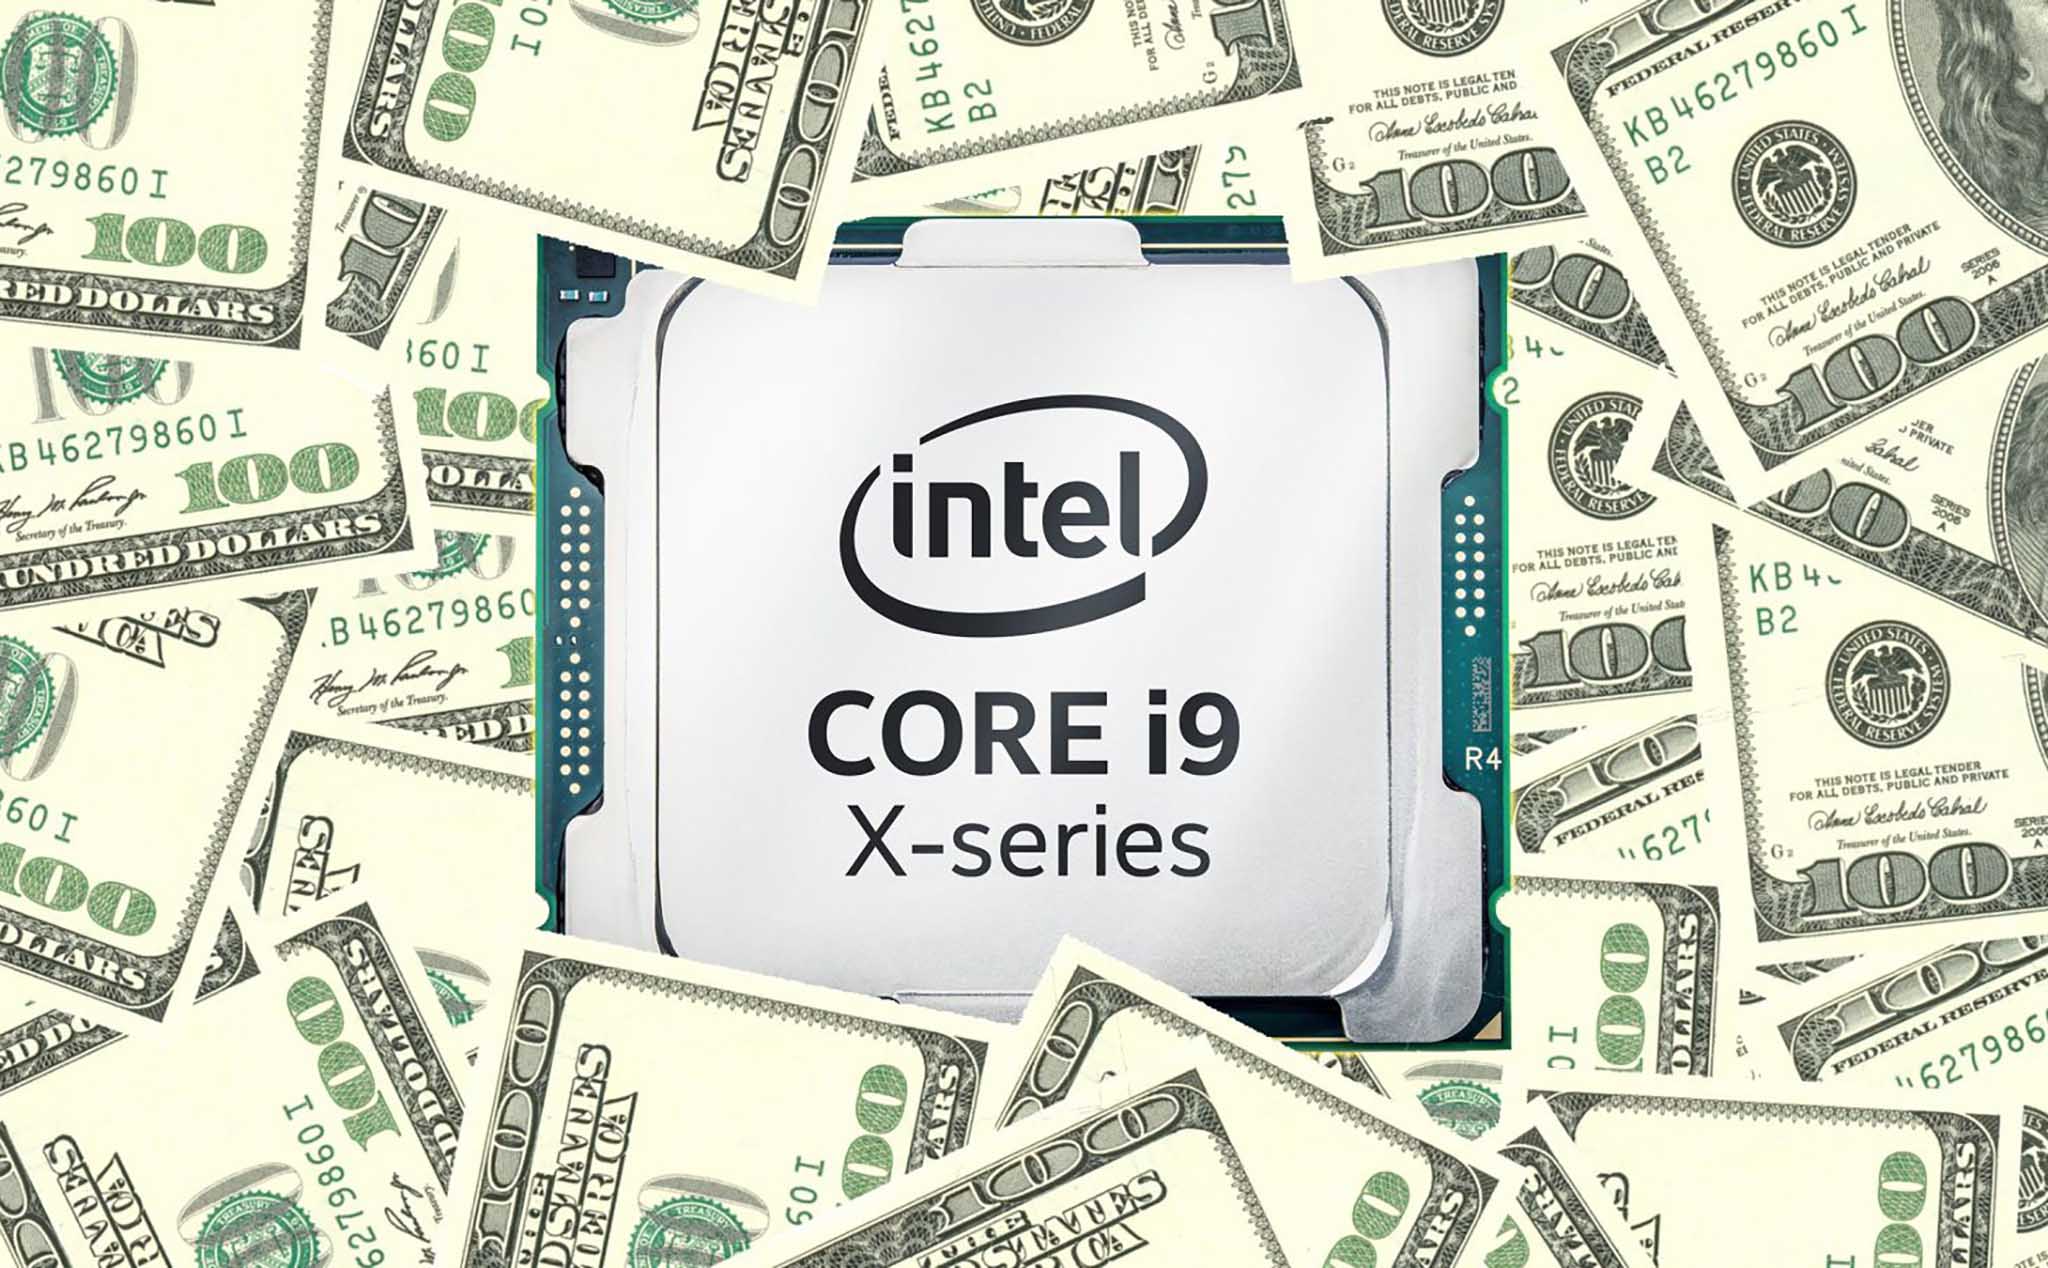 Intel chịu lỗ 3 tỉ USD để giảm giá CPU, quyết ăn thua đủ với AMD?